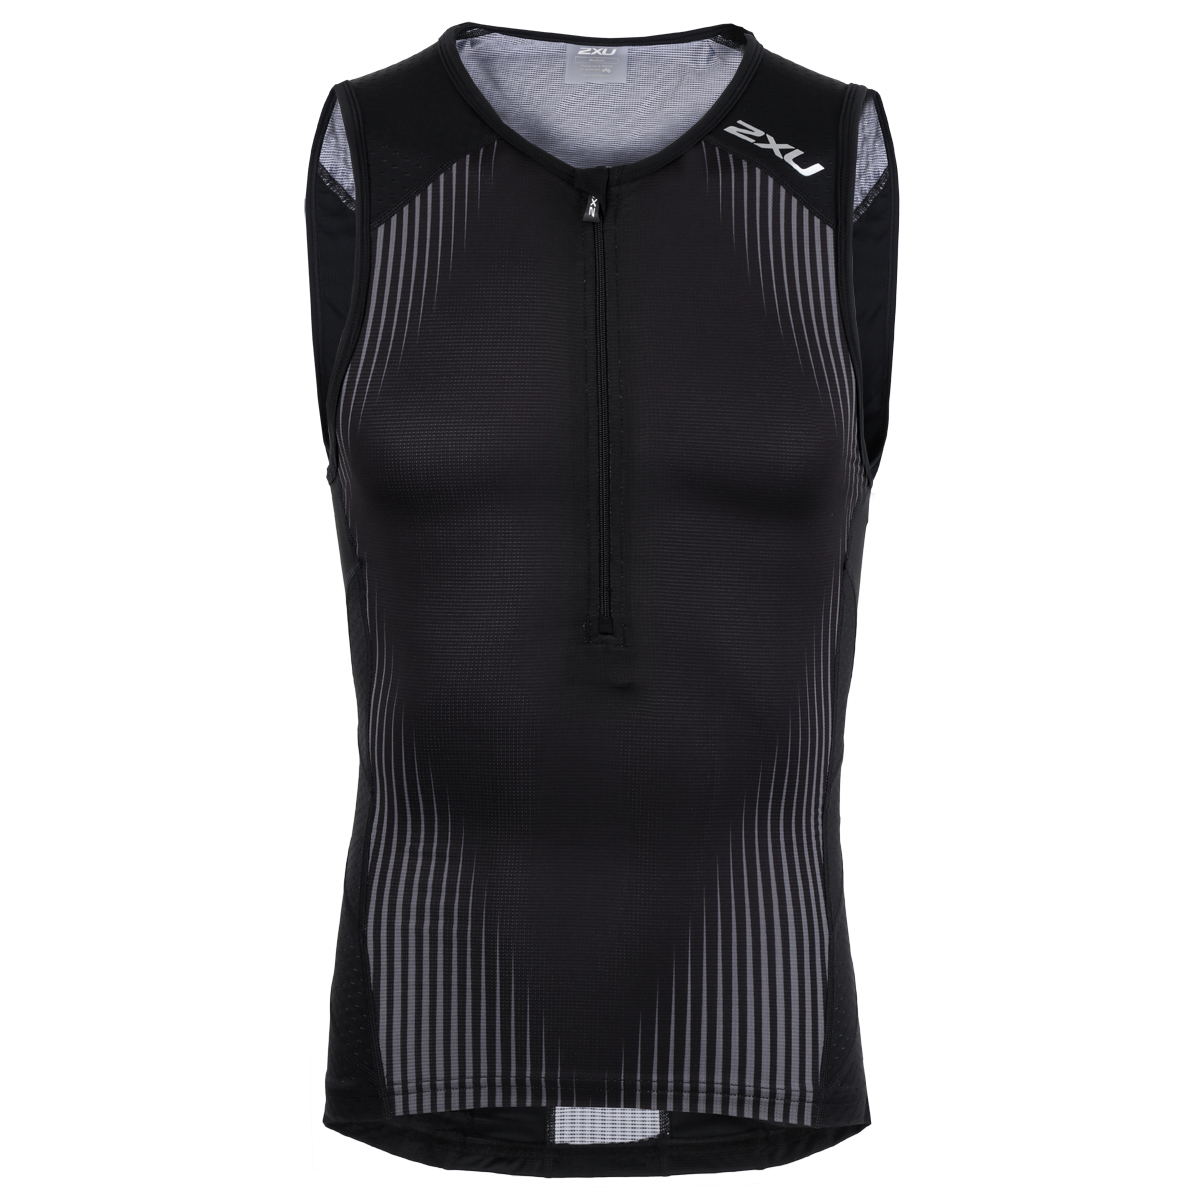 Produktbild von 2XU Perform Tri Singlet Triathlonshirt - black/shadow